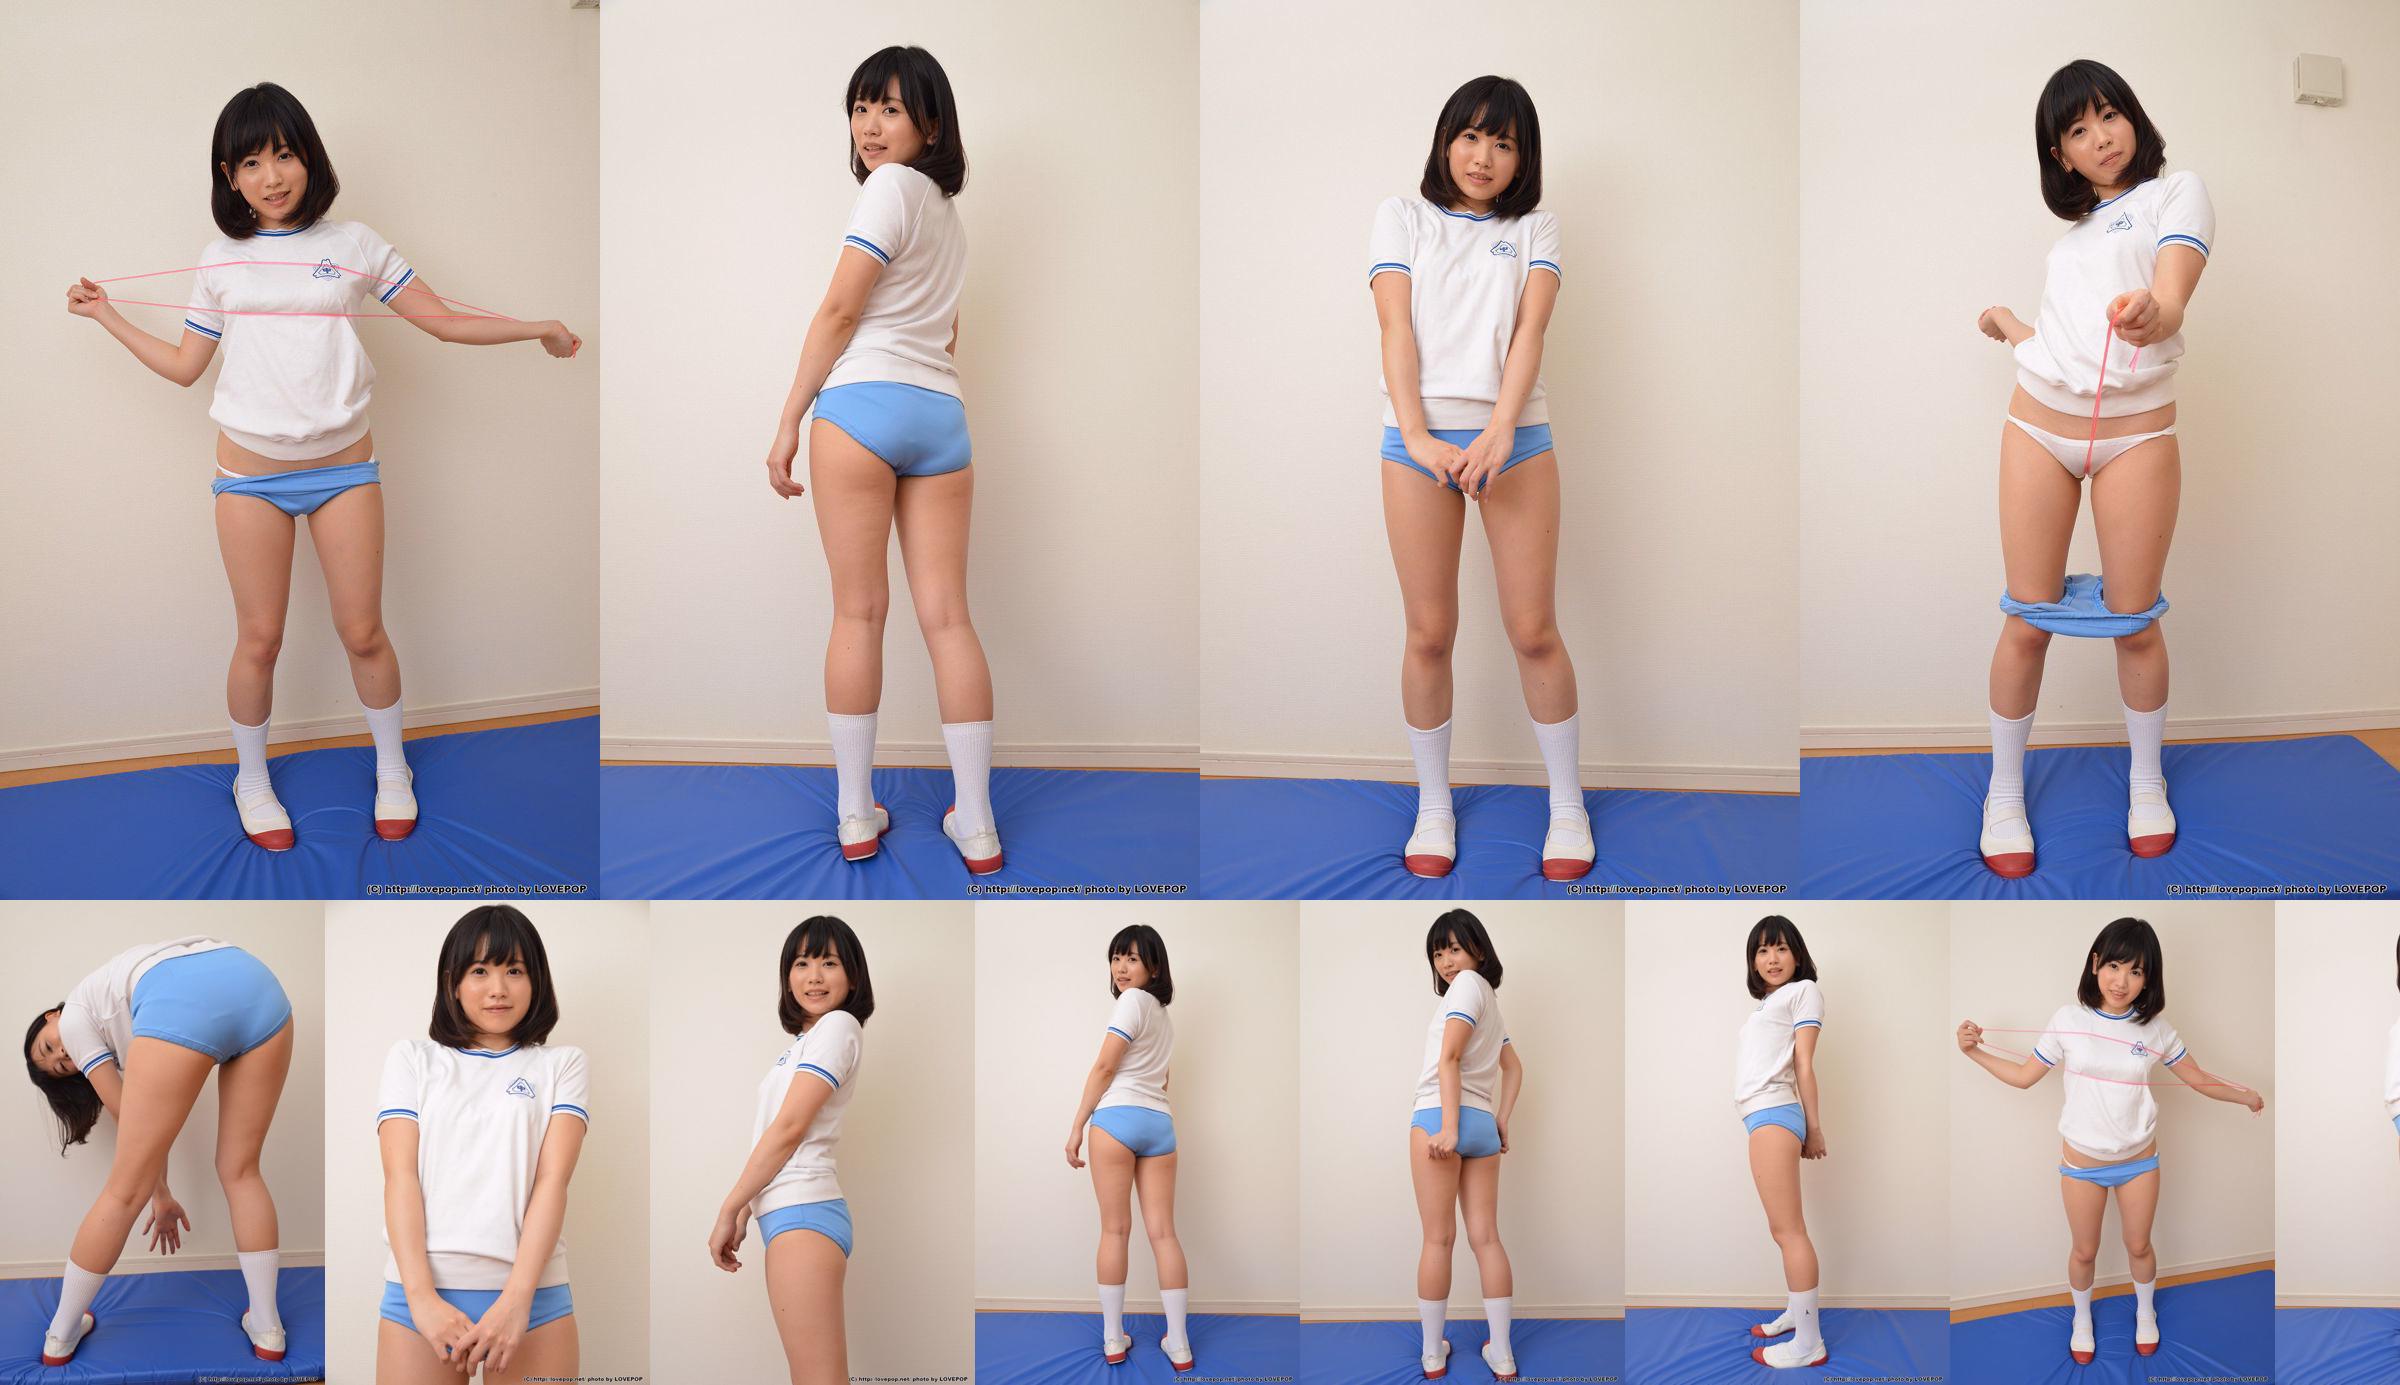 [LOVEPOP] Yuna Kimino Yuna Kimino Photoset 01 No.a3970e Page 1